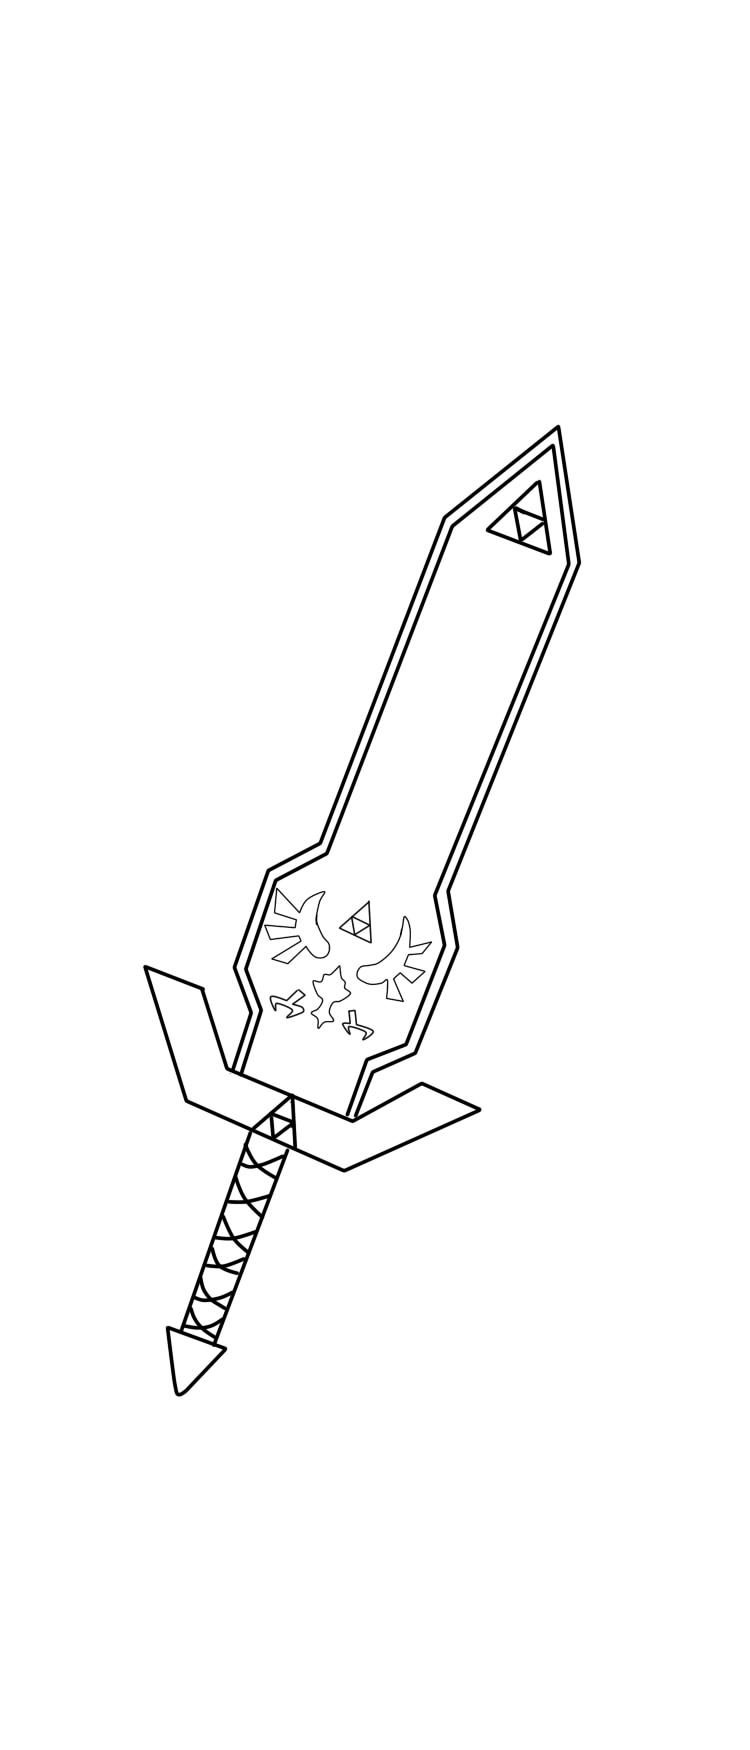 Master Sword Lineart by FullmetalDemigod on DeviantArt